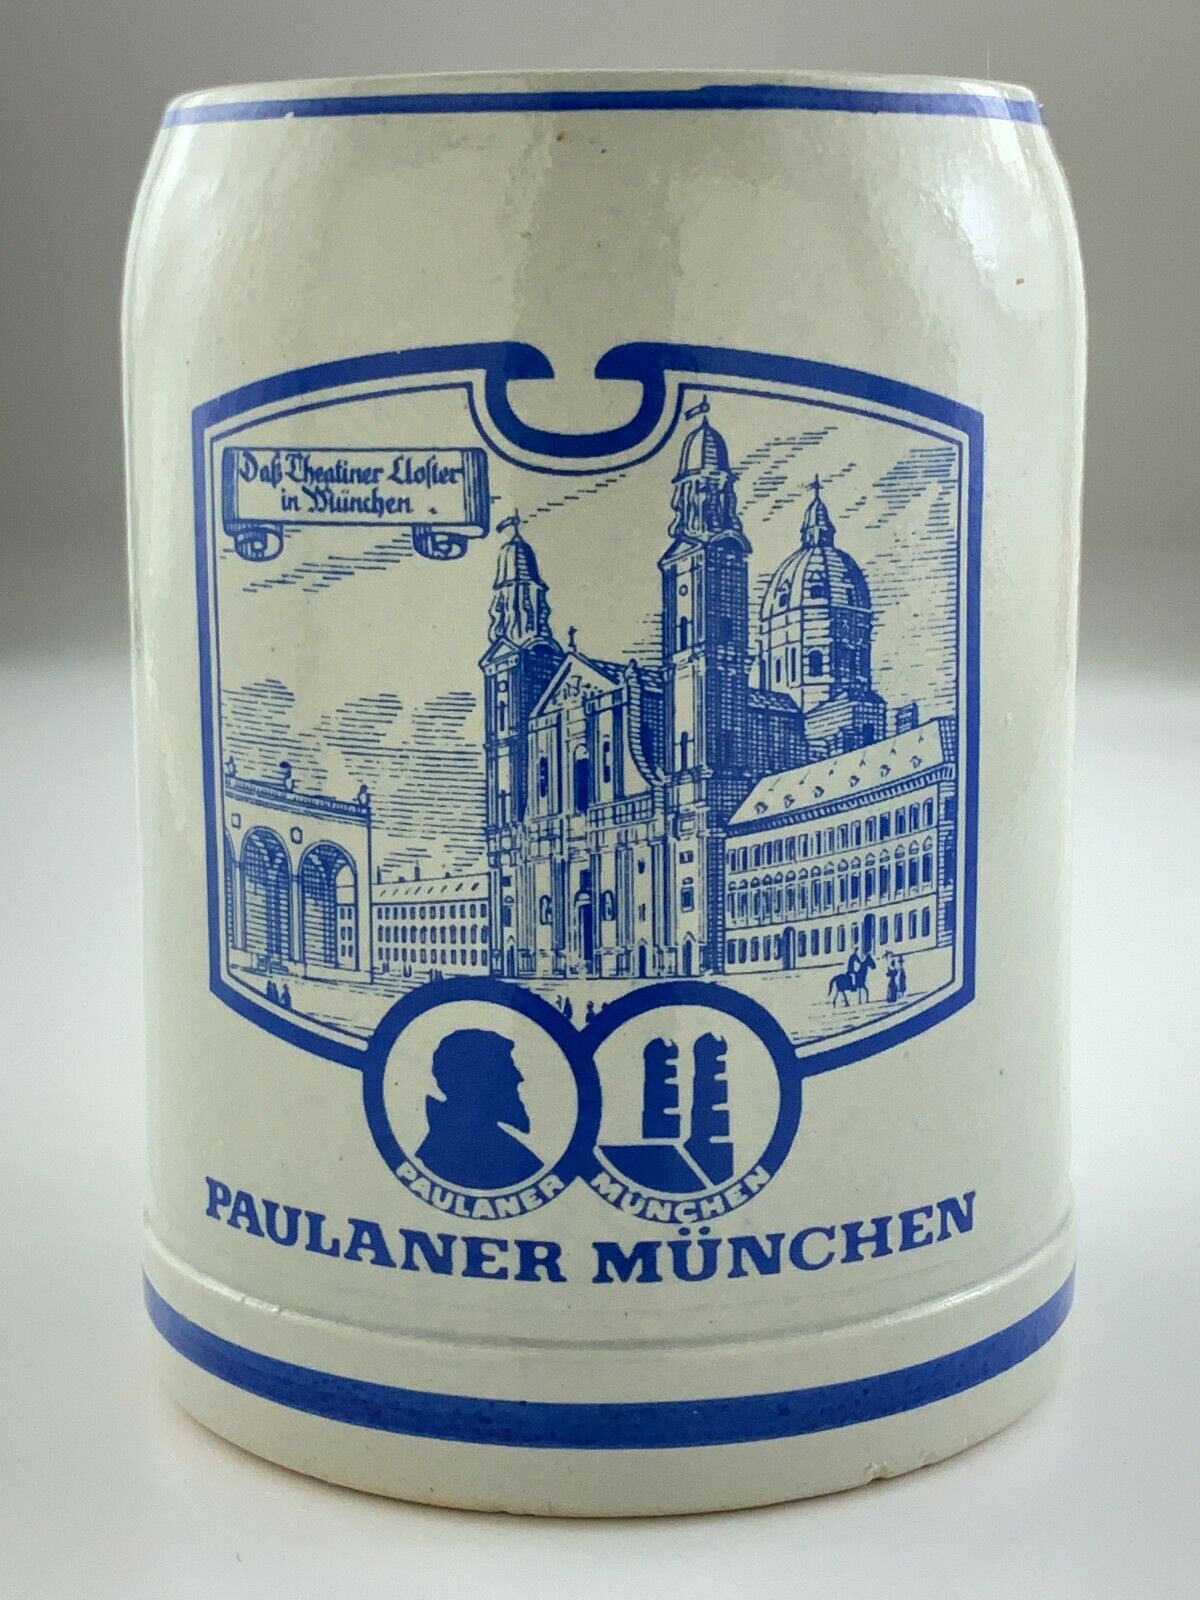 Vintage Paulaner Munchen Beer Stein Mug 0.5L German U476